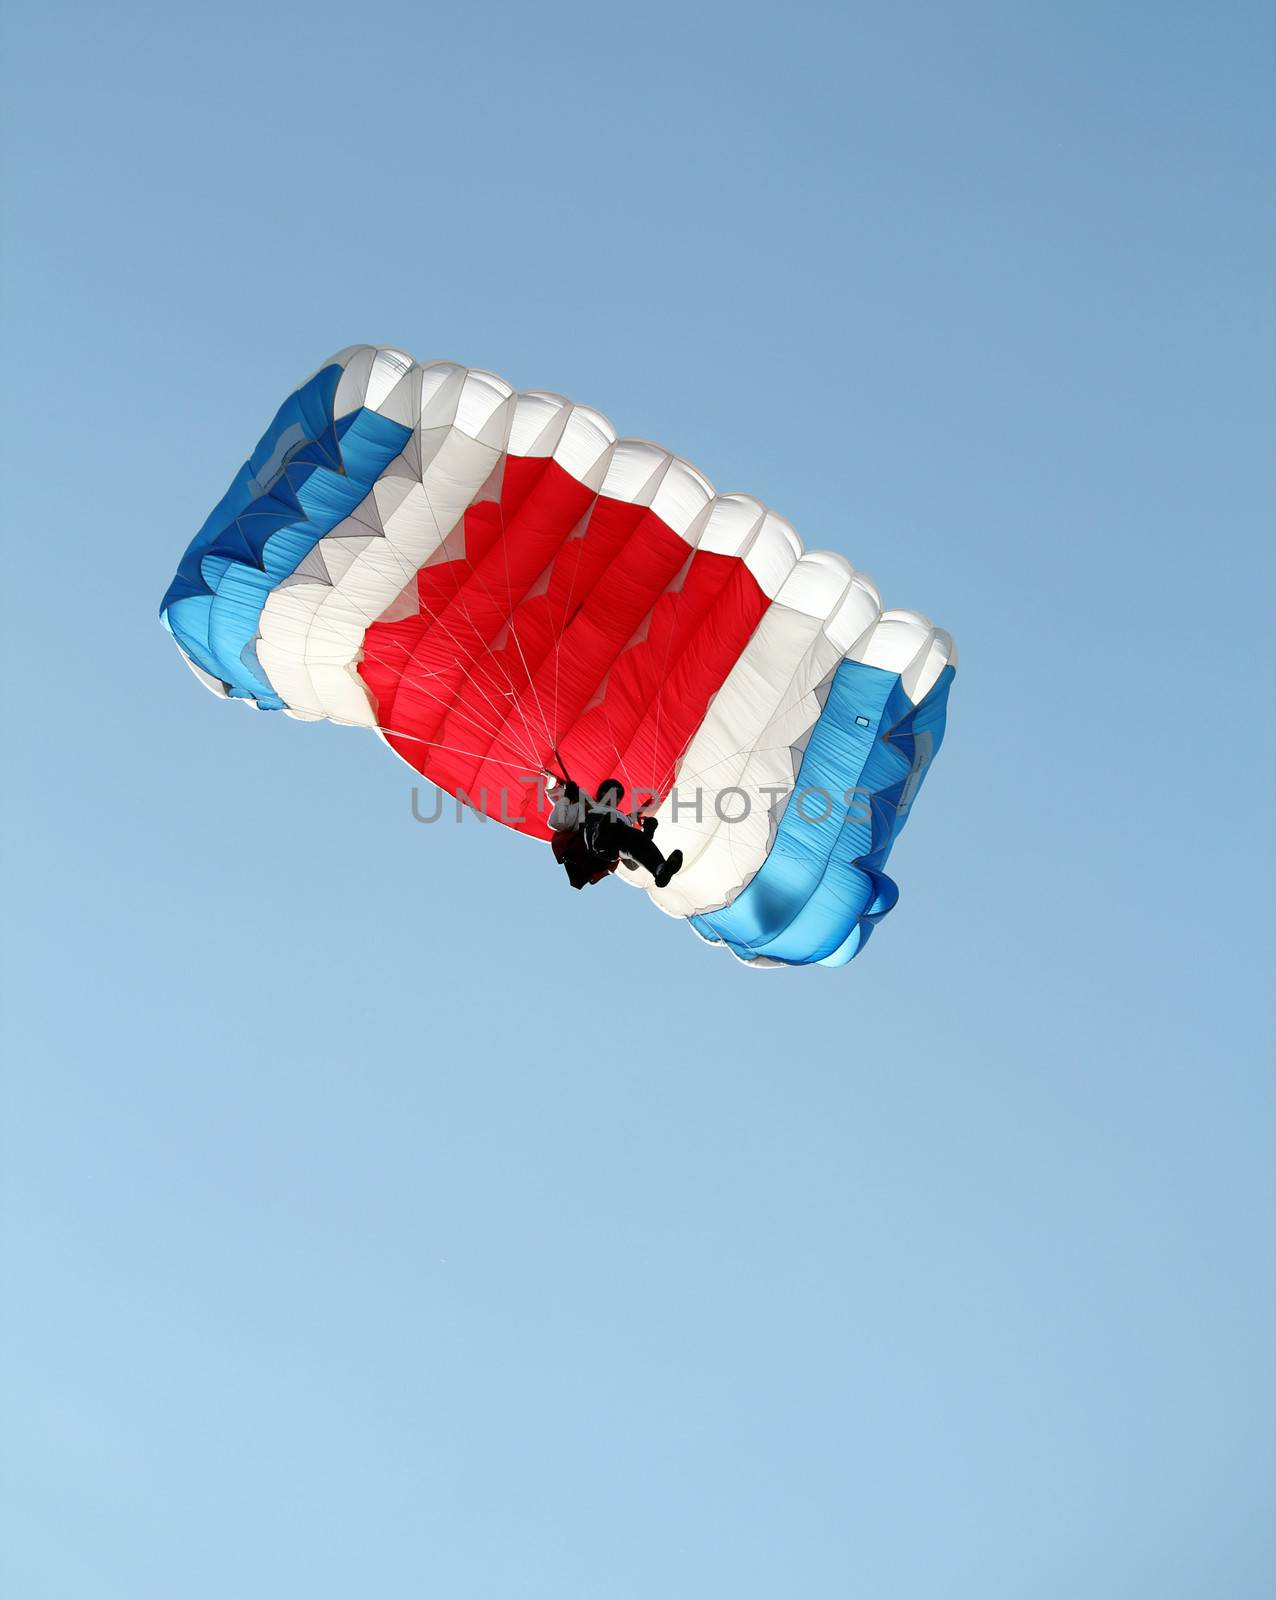 parachutist on sky extreme sport  by goce